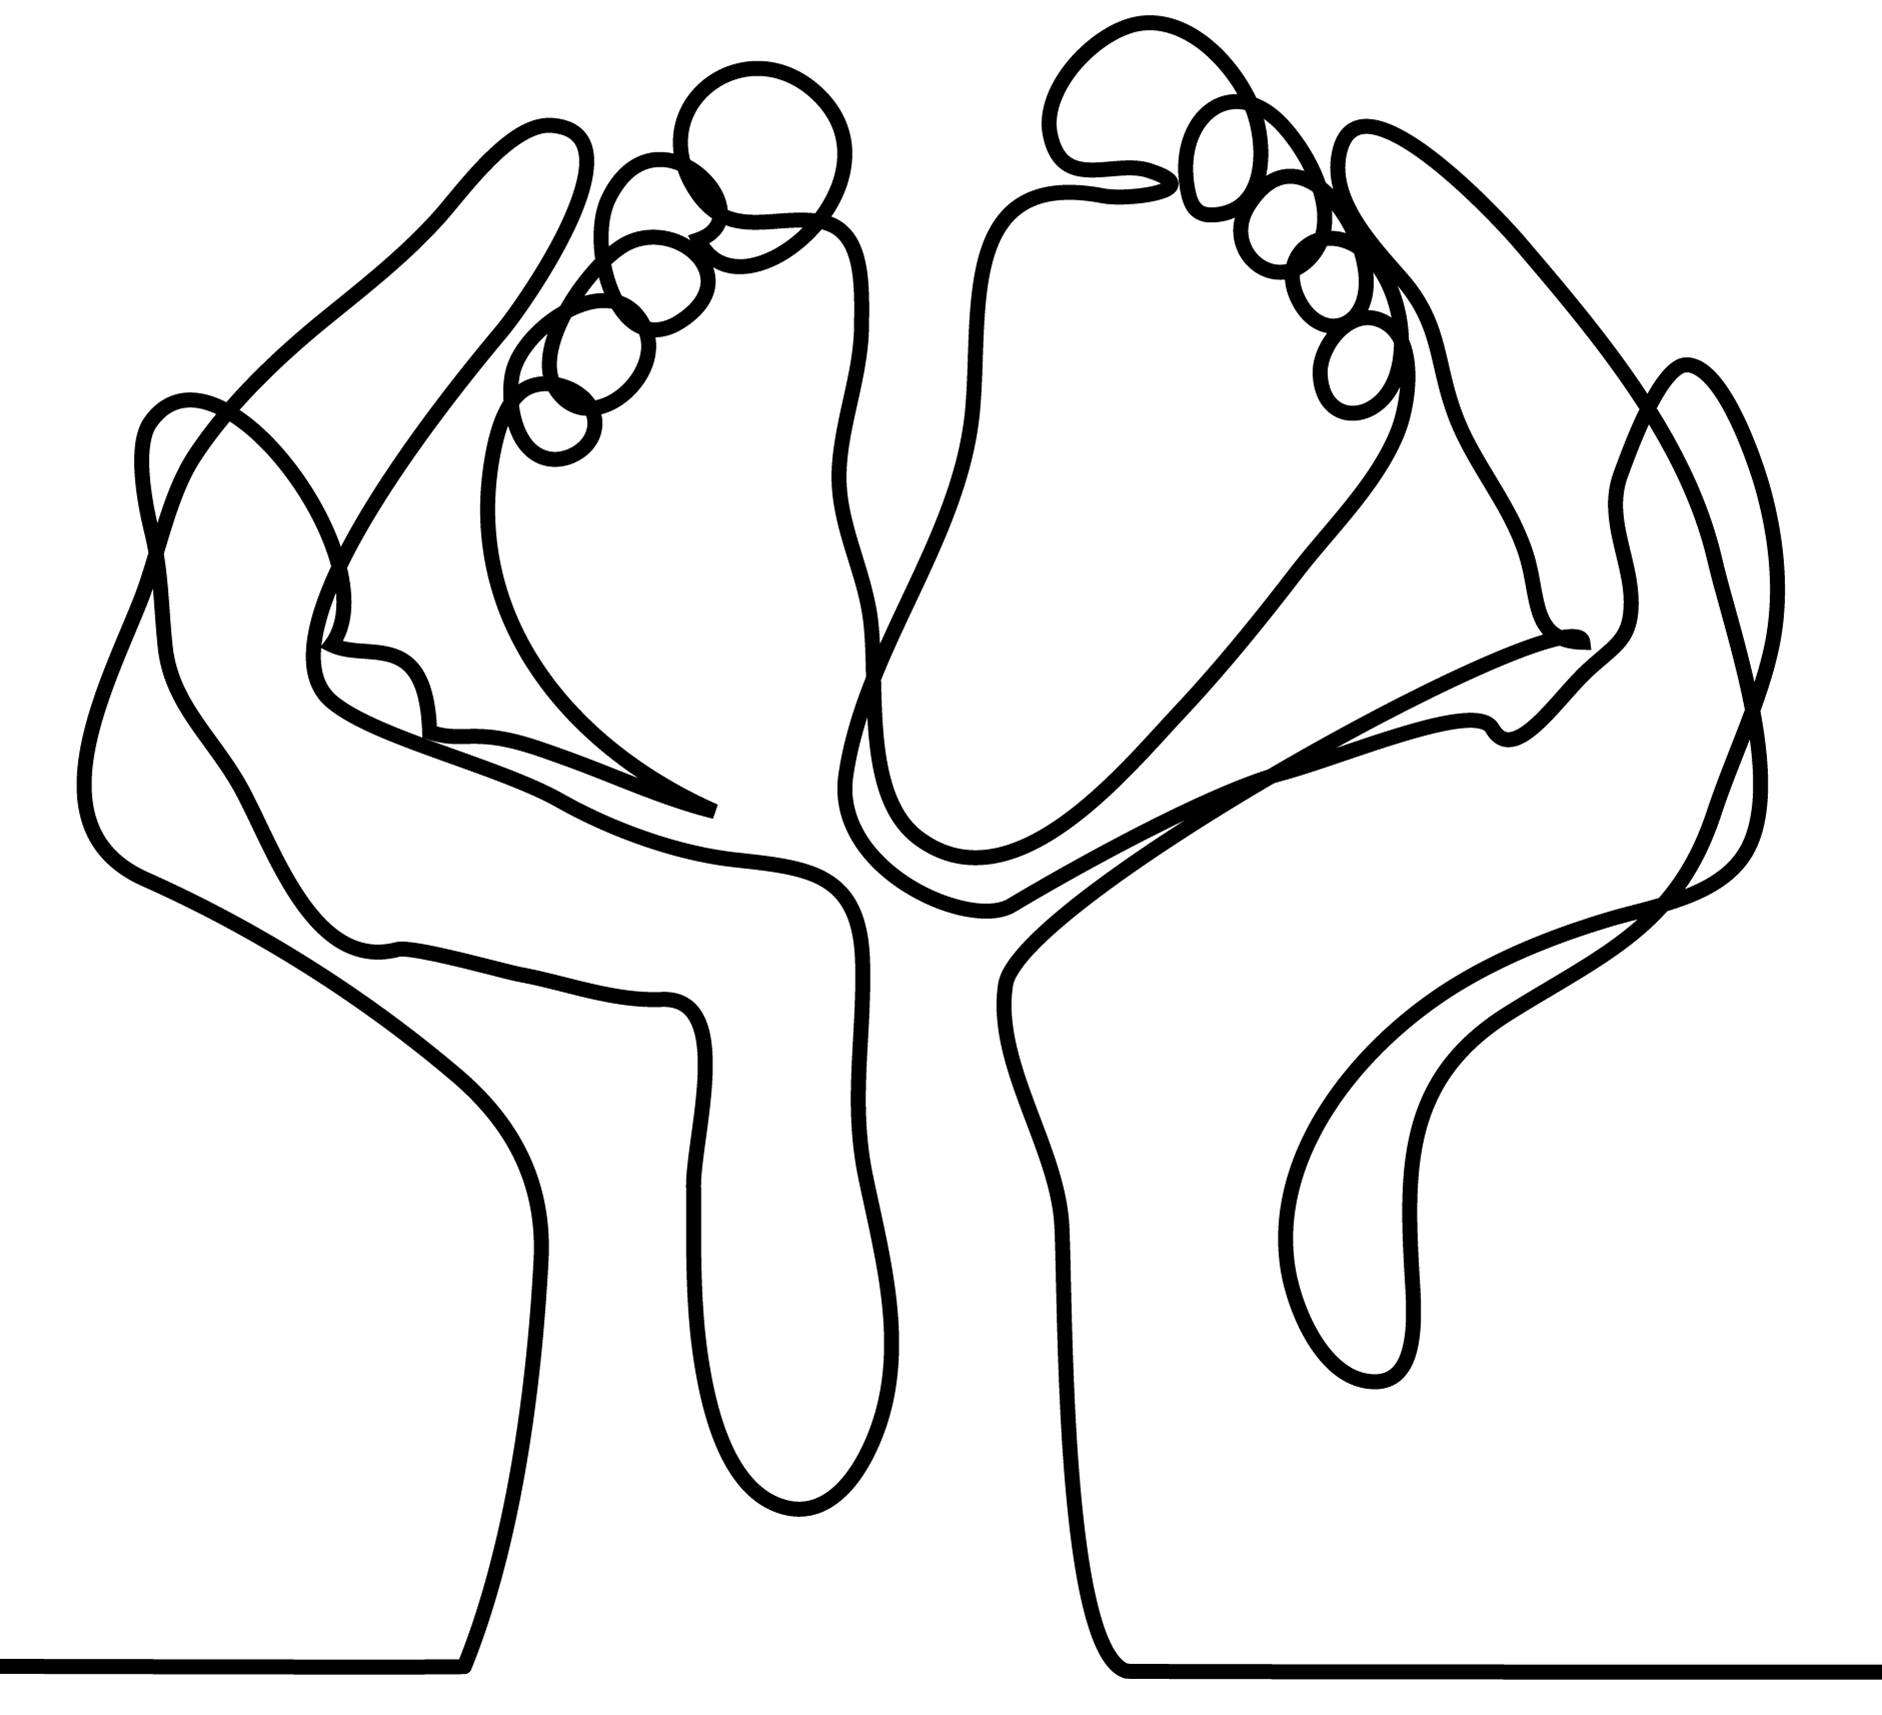 dessin en 1 ligne representant des mains tenant des pieds de bébé